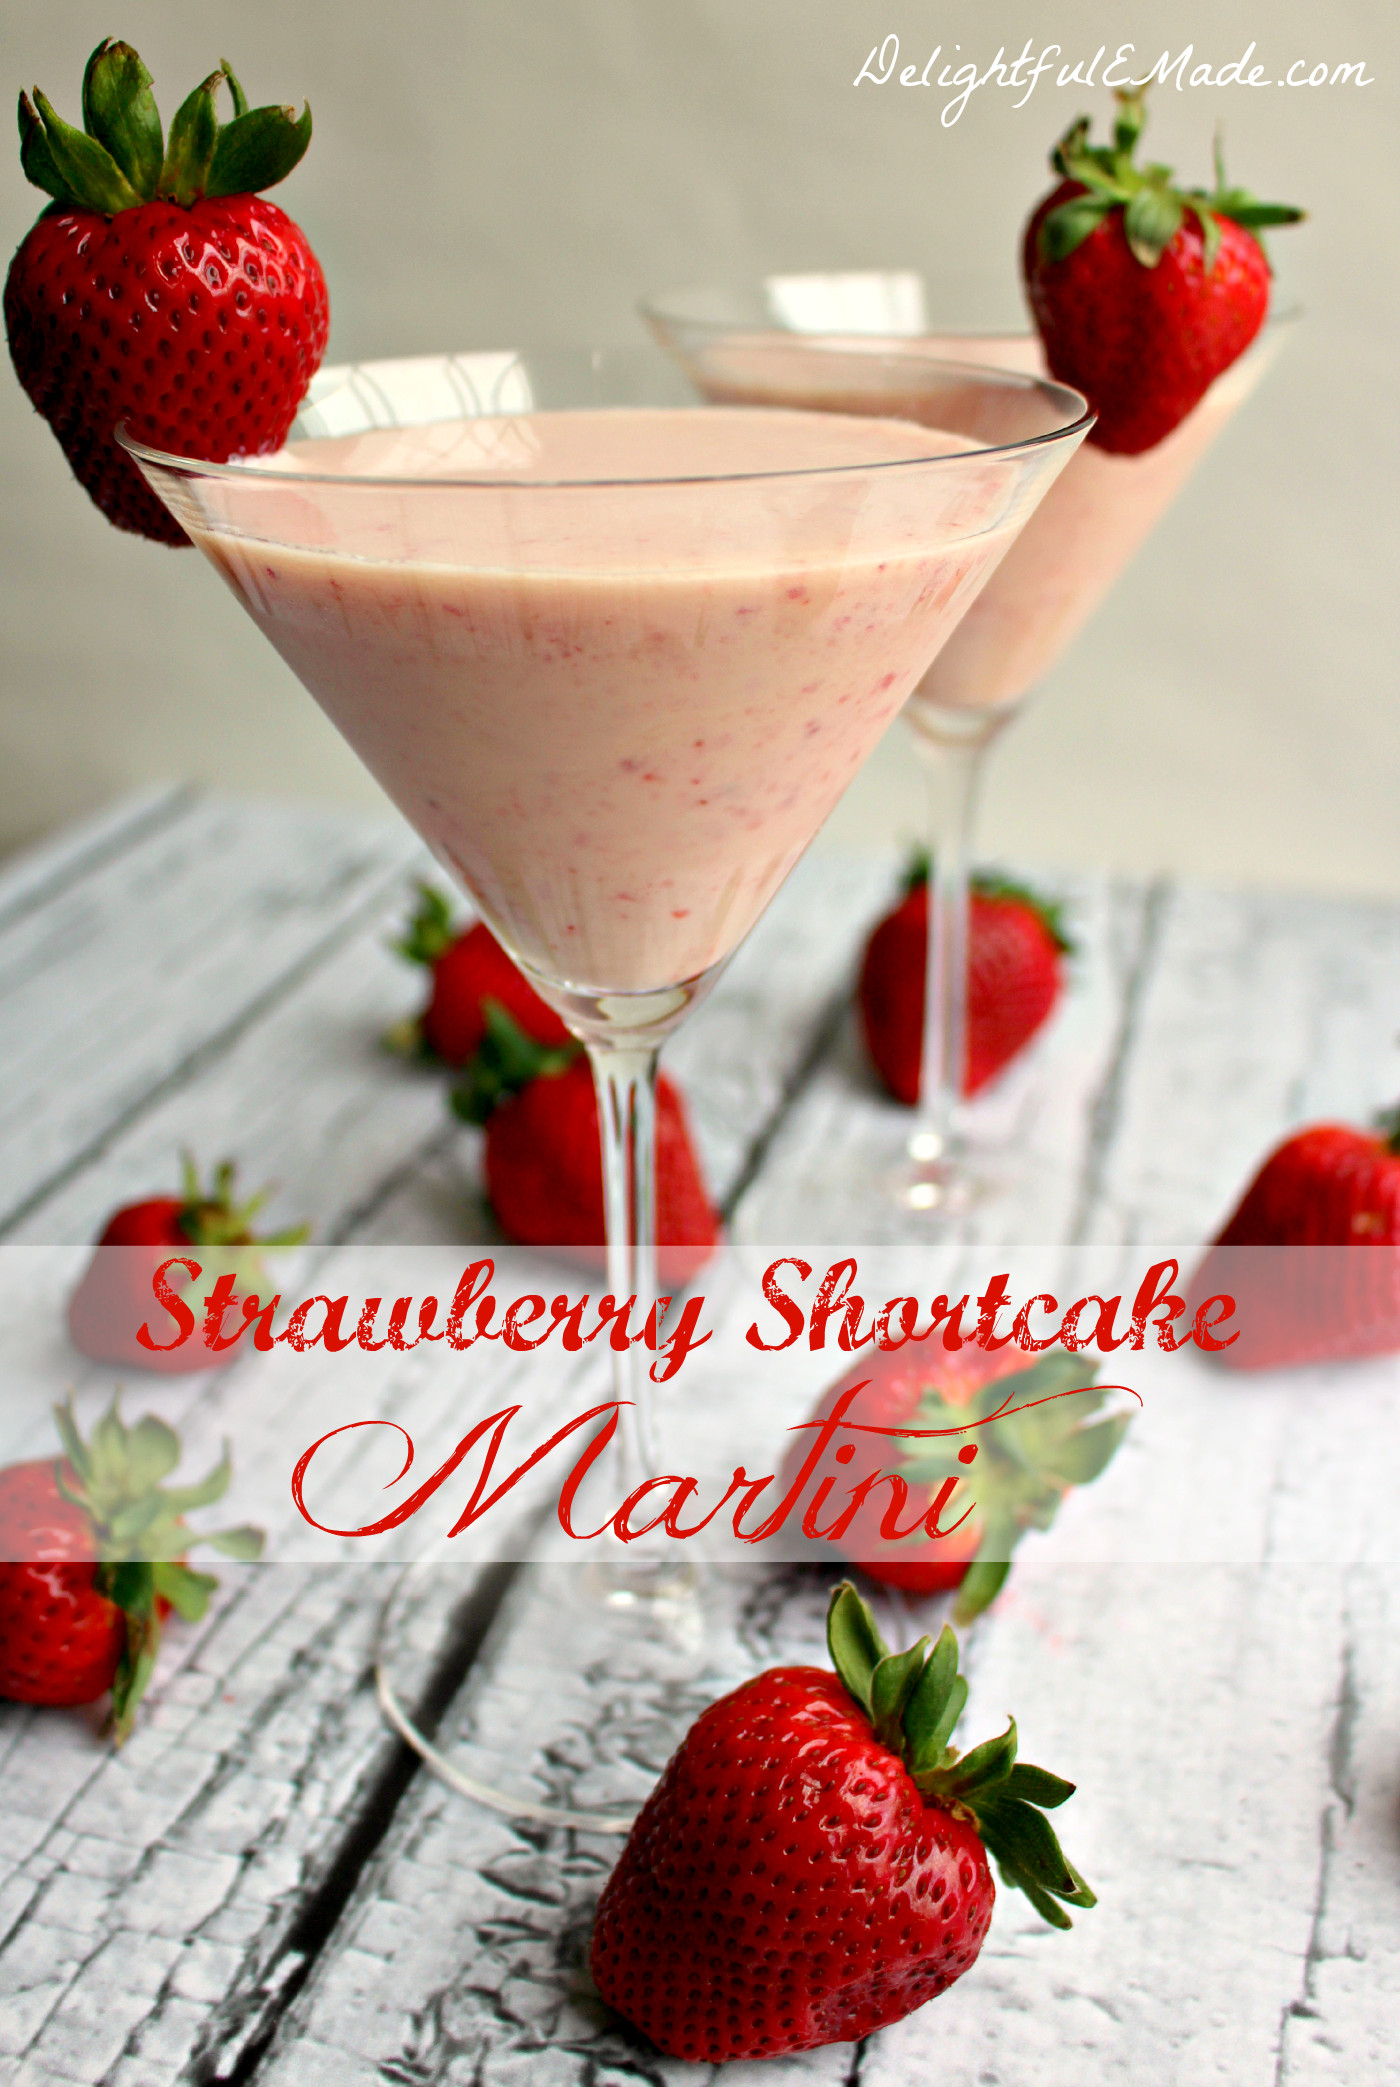 Strawberry Shortcake Cocktail
 Strawberry Shortcake Martini Delightful E Made